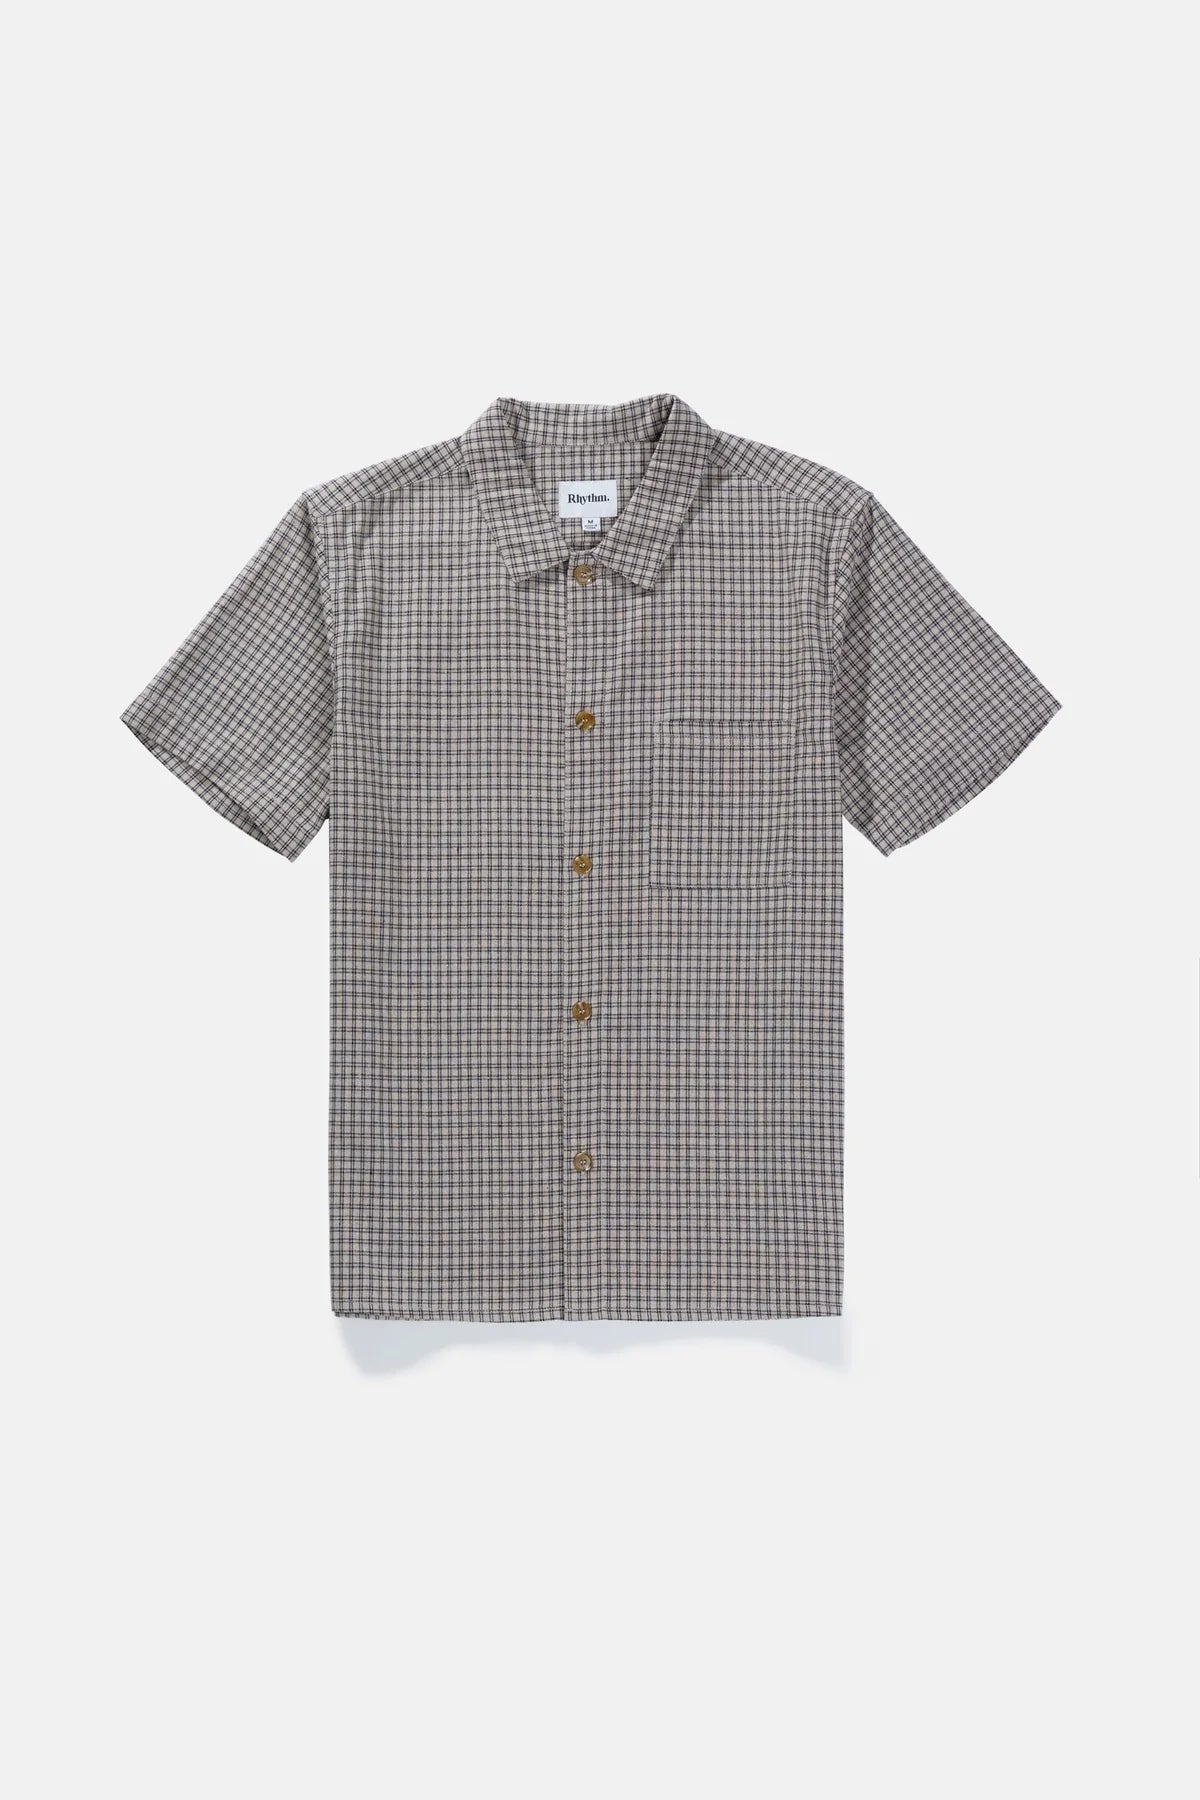 Linen Check SS Shirt